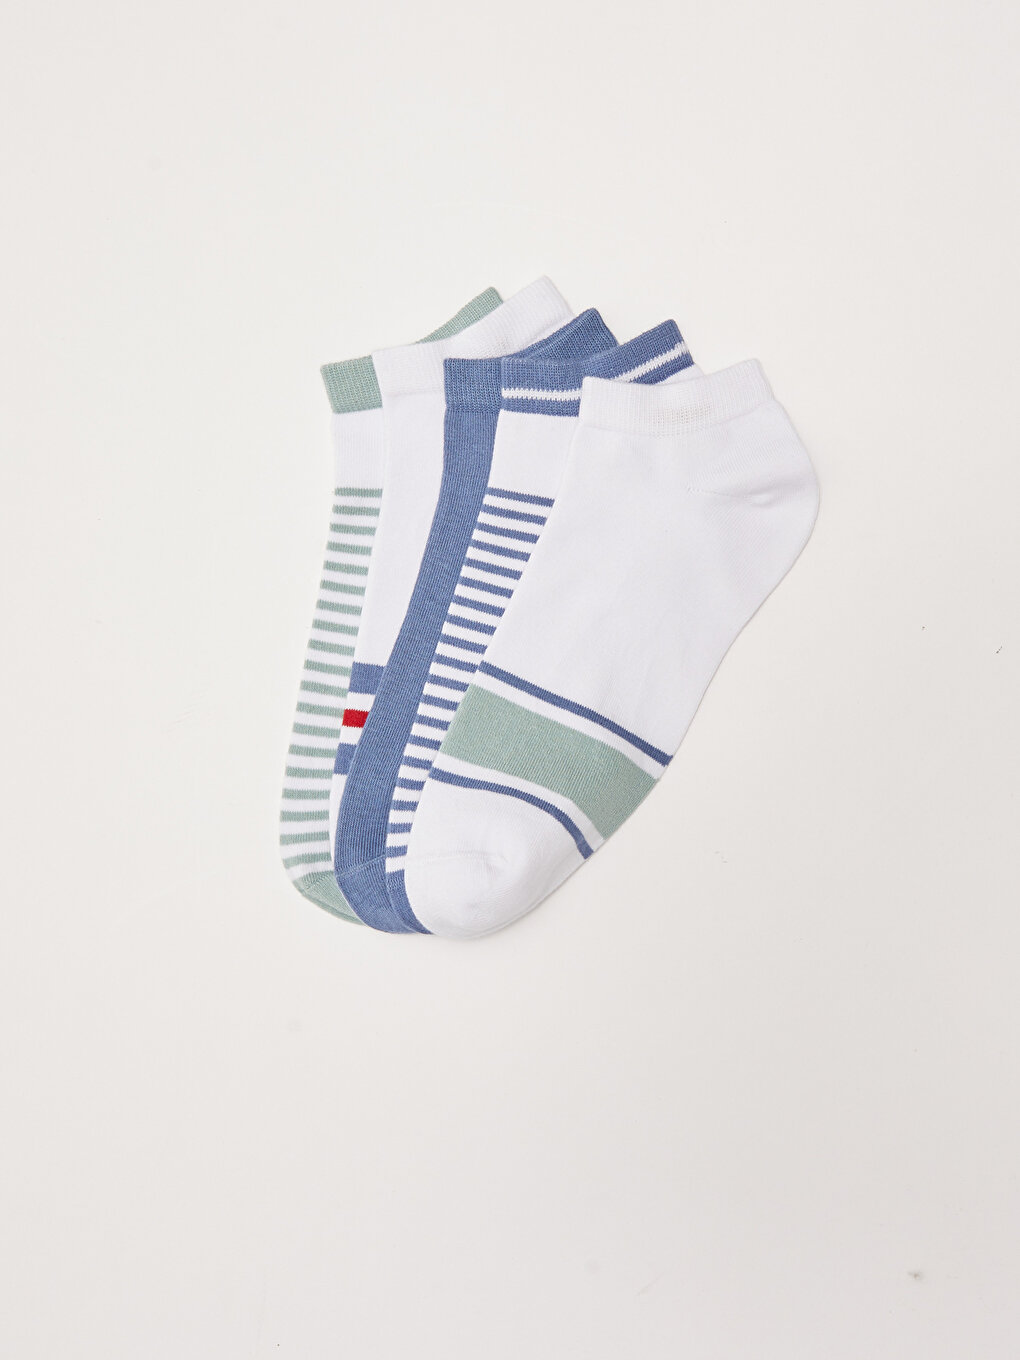 Striped Men's Booties Socks 5 Pack -S2AQ26Z8-K00 - S2AQ26Z8-K00 - LC ...